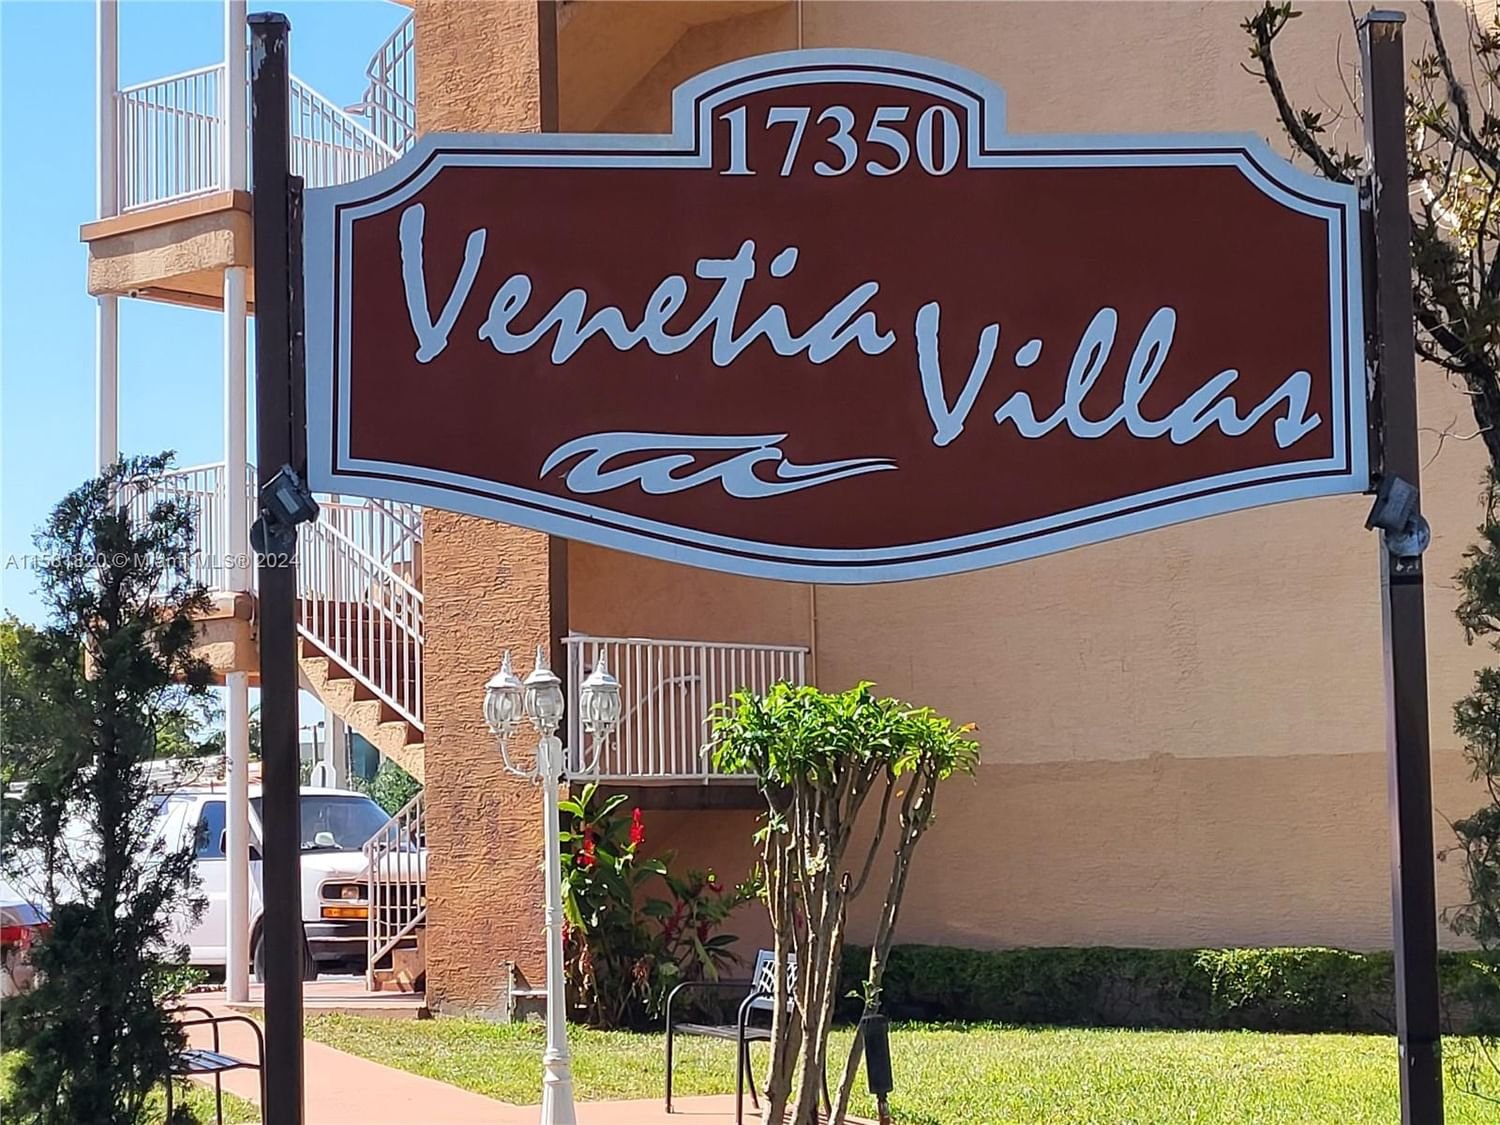 Real estate property located at 17350 67th Ave #108, Miami-Dade County, VENETIA VILLAS CONDO, Hialeah, FL